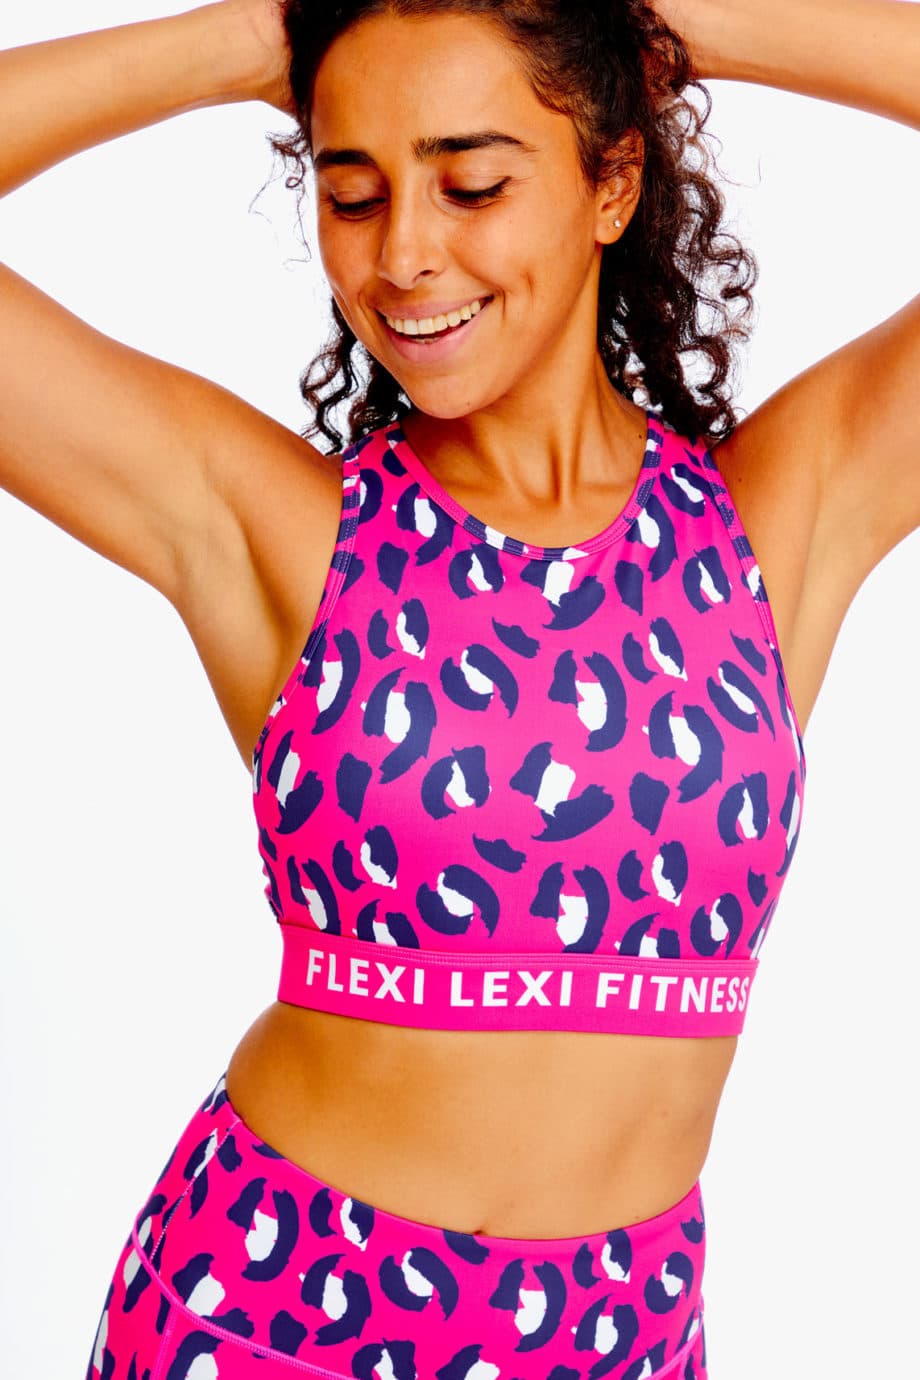 Hear Me Roar Sport Bra from Flexi Lexi Fitness